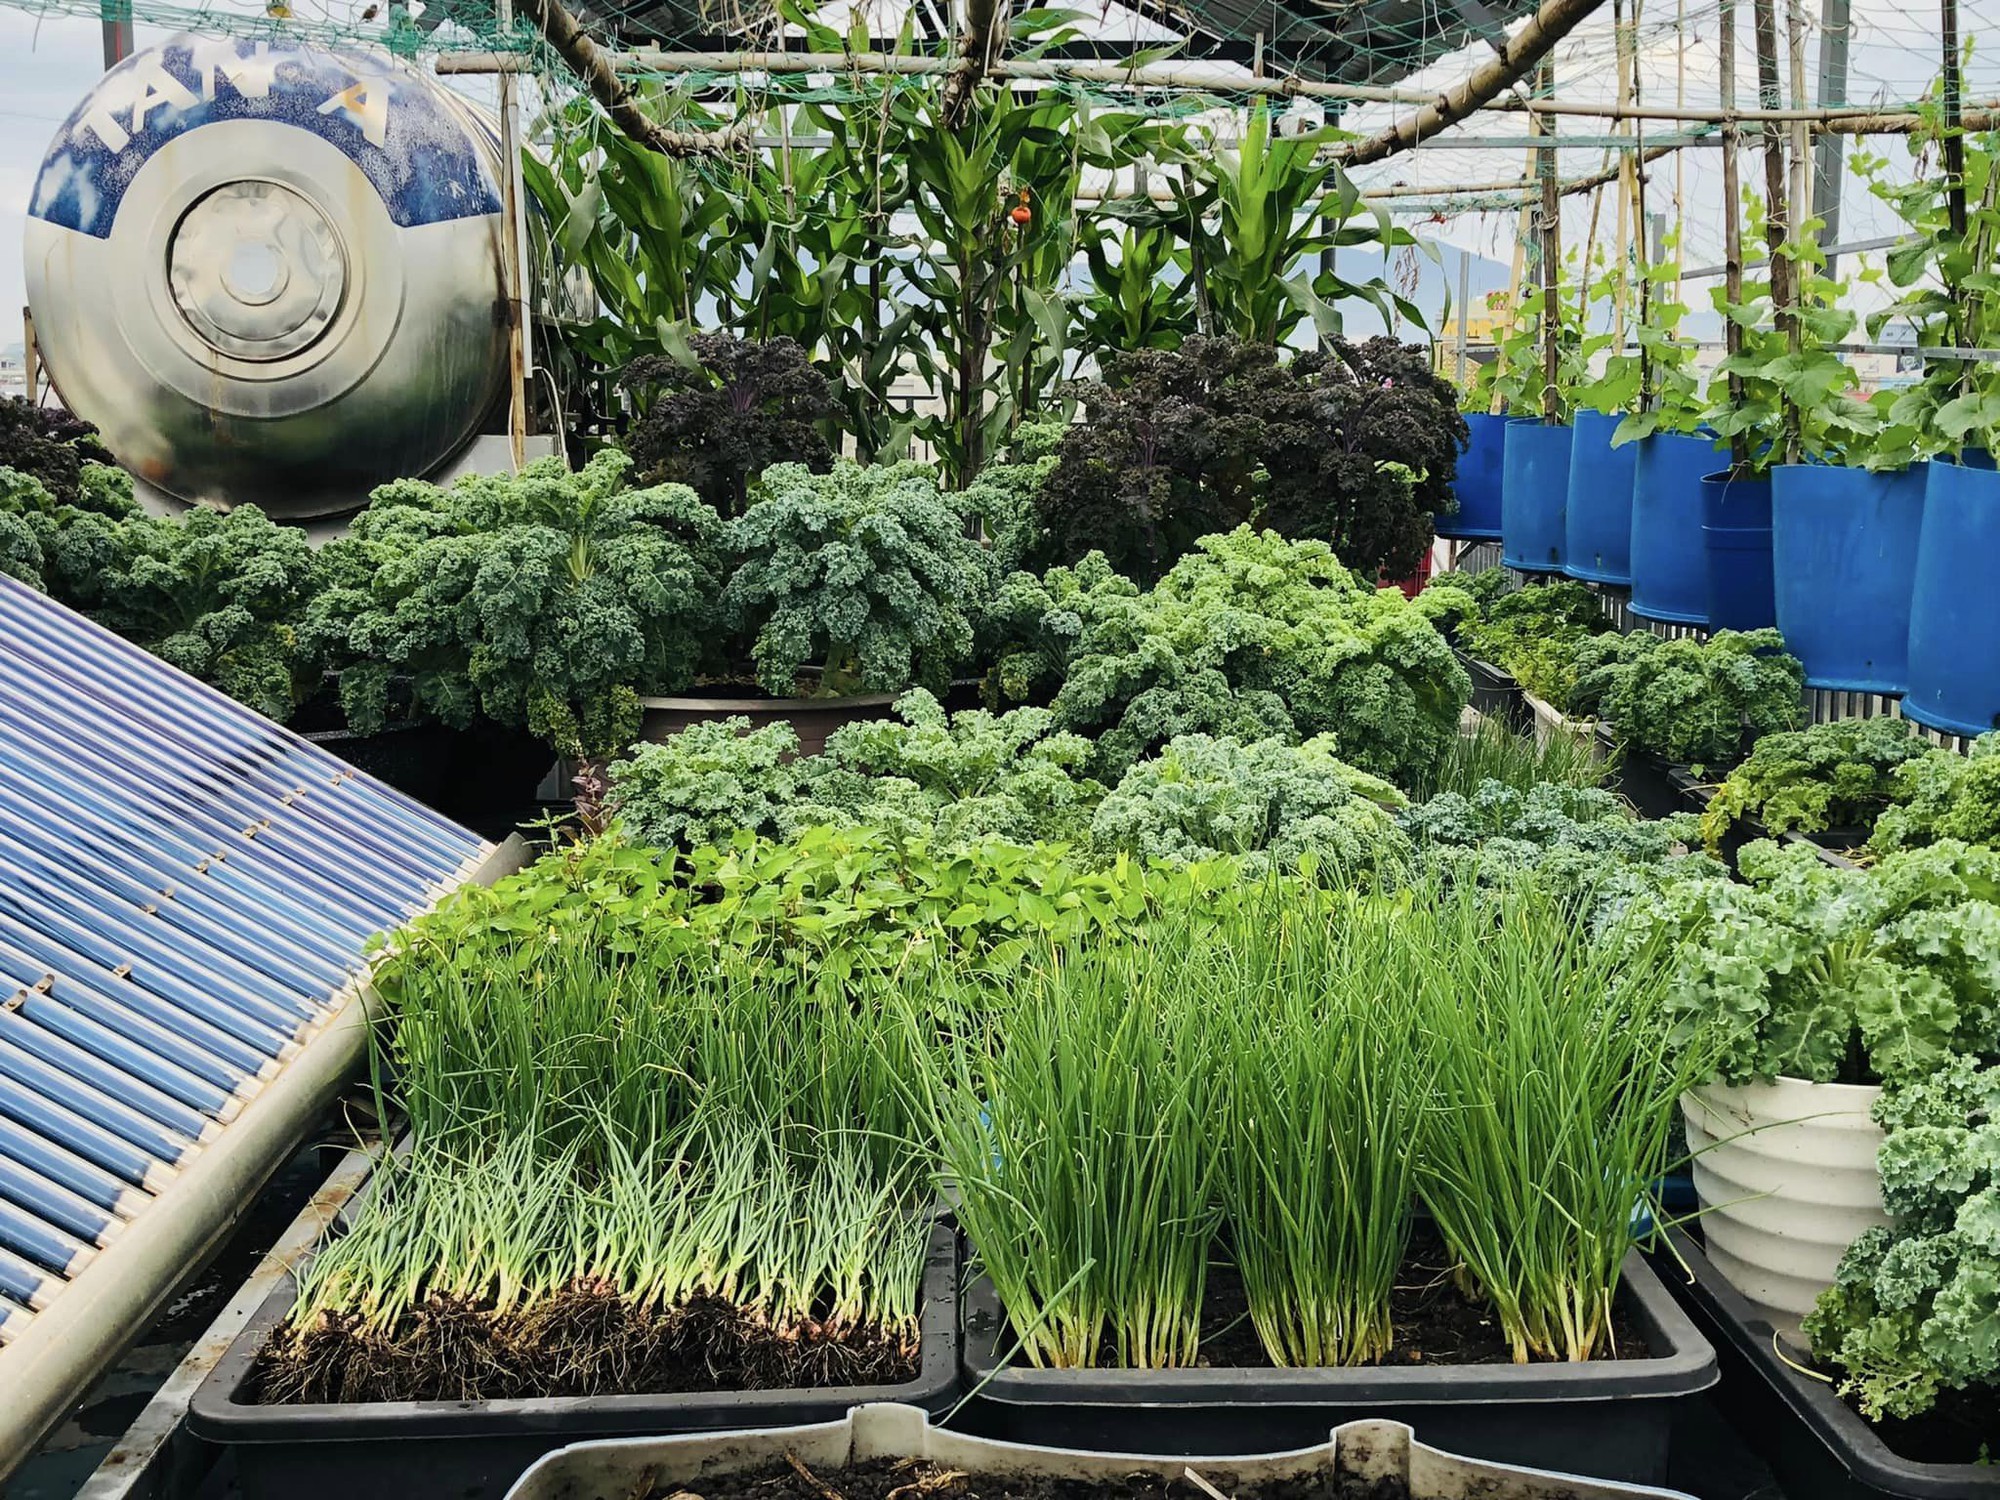 Mãn nhãn với vườn rau trên sân thượng mơn mởn, xanh mướt, ăn không hết của mẹ đảm ở Đà Nẵng-10